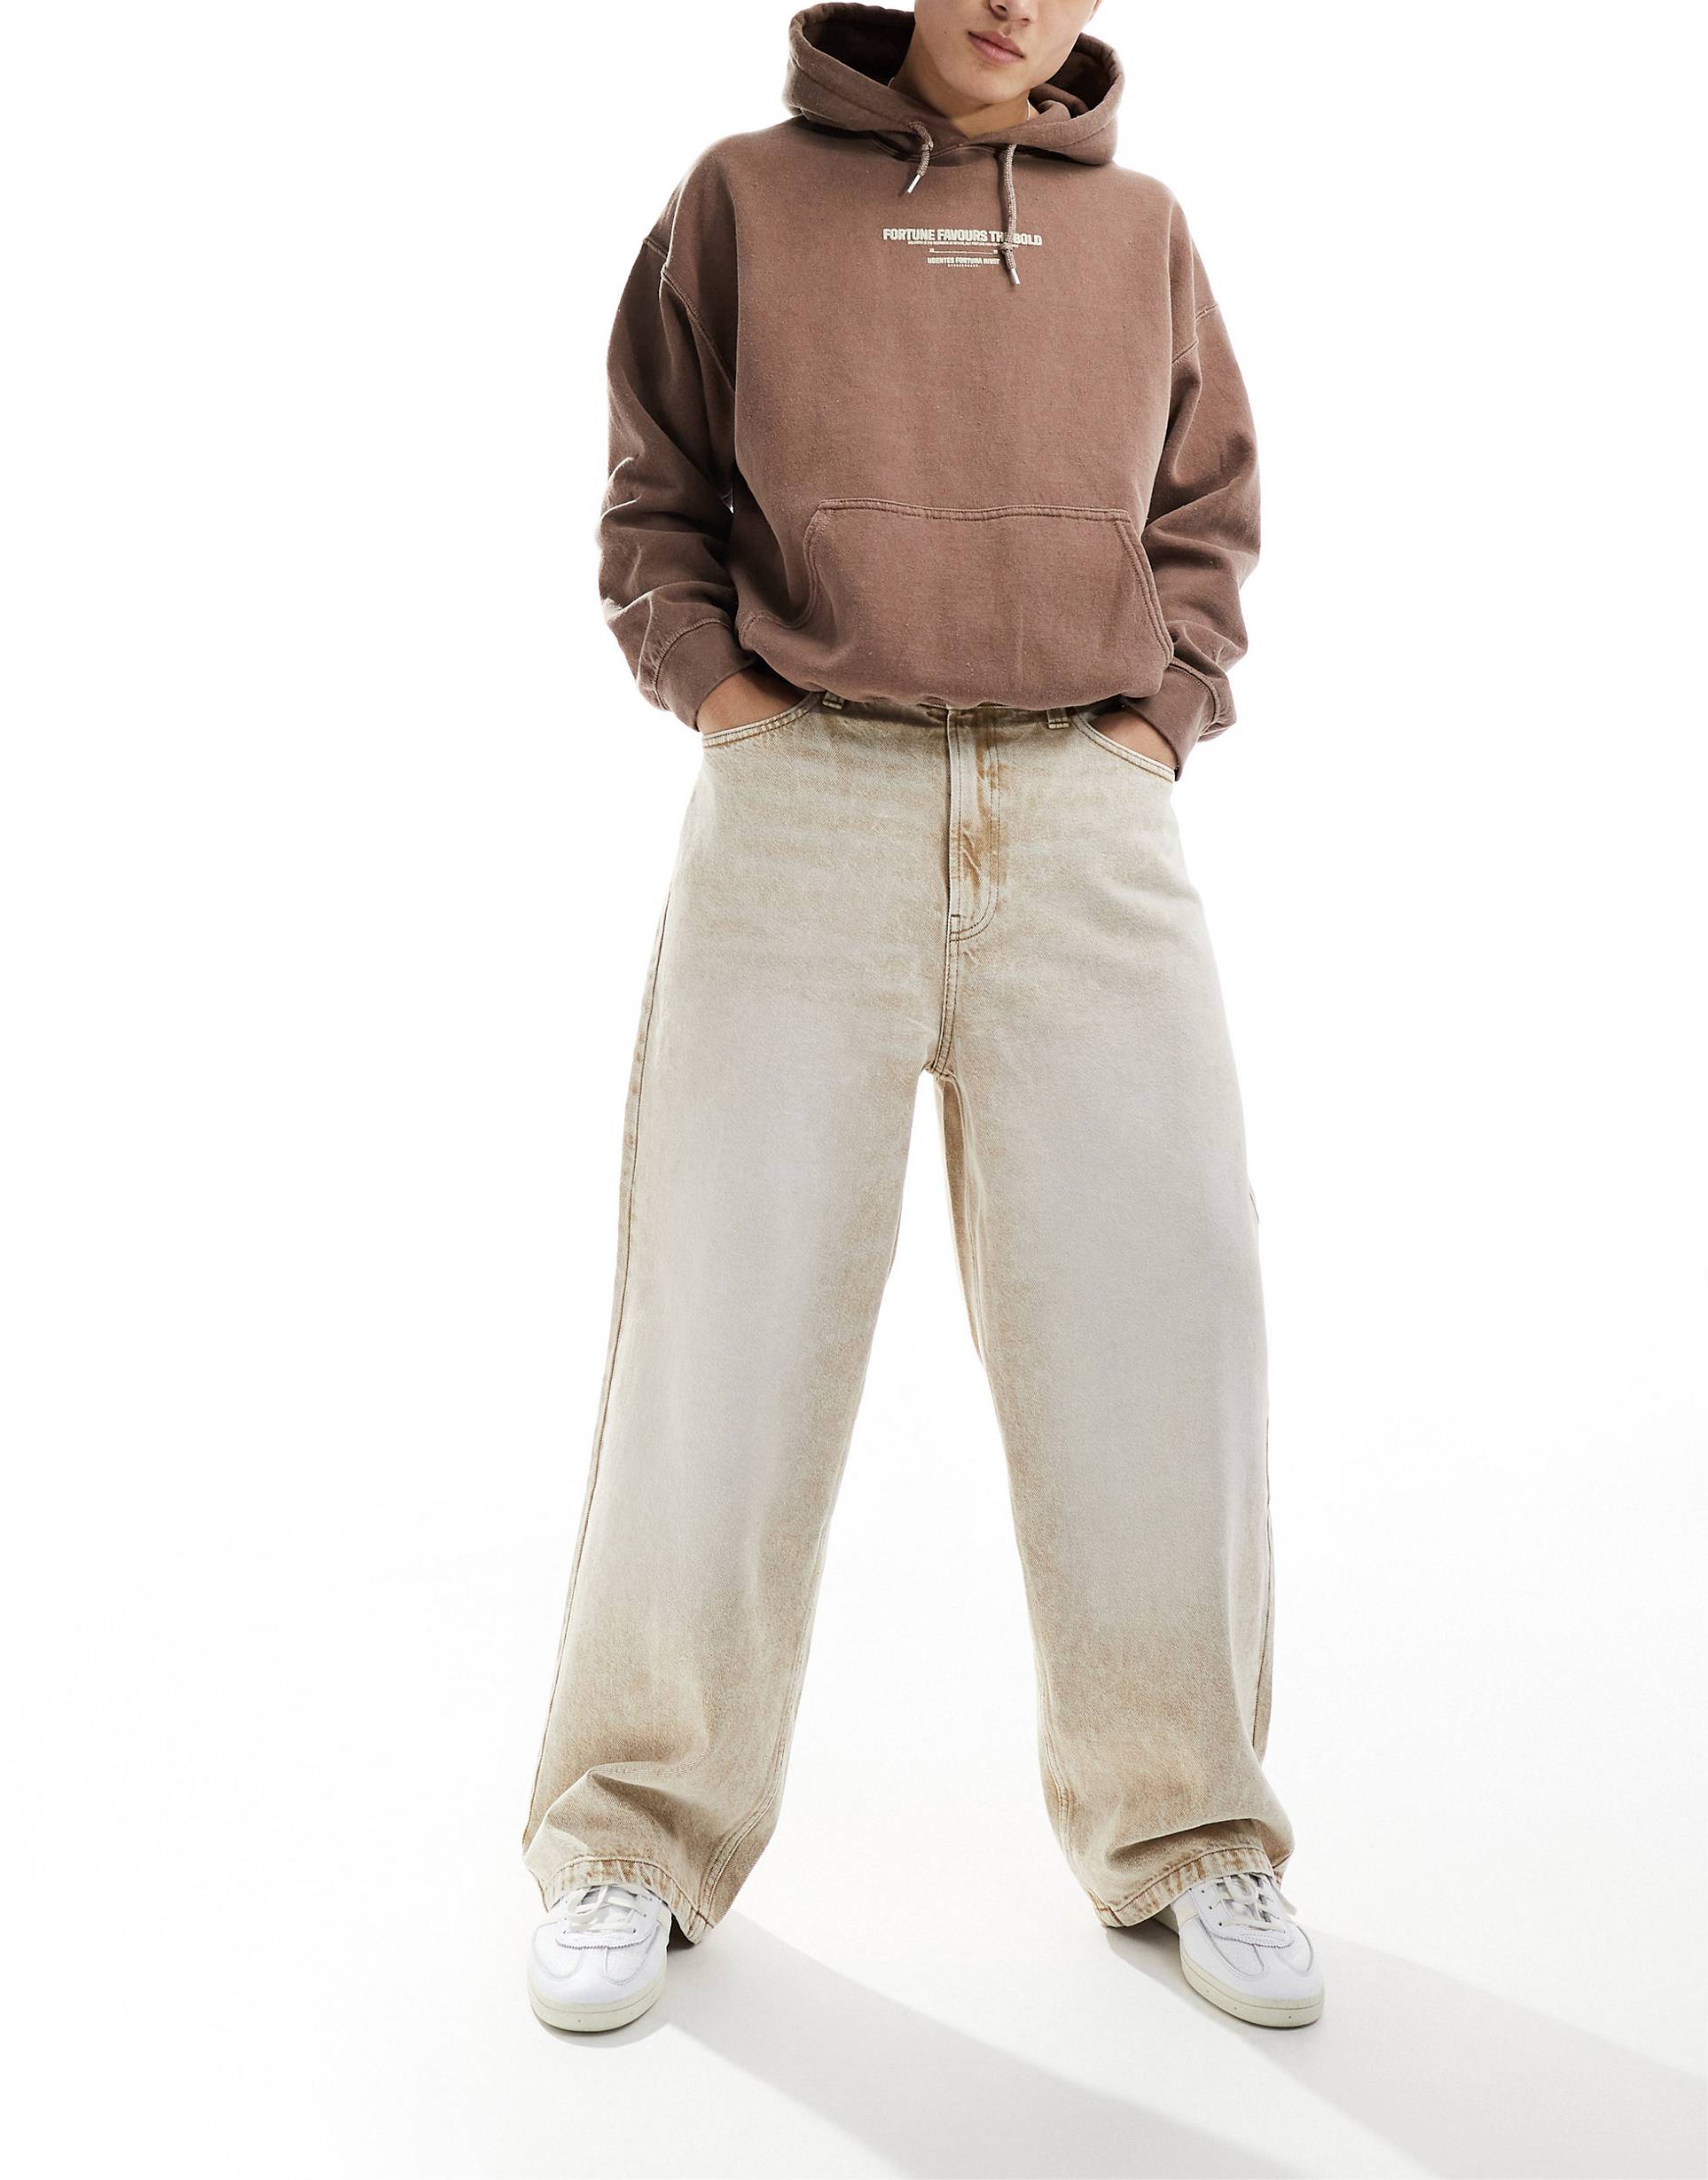 Джинсы Bershka Skater Fit Casted, бежевый джинсы bershka с потертостями 42 размер новые